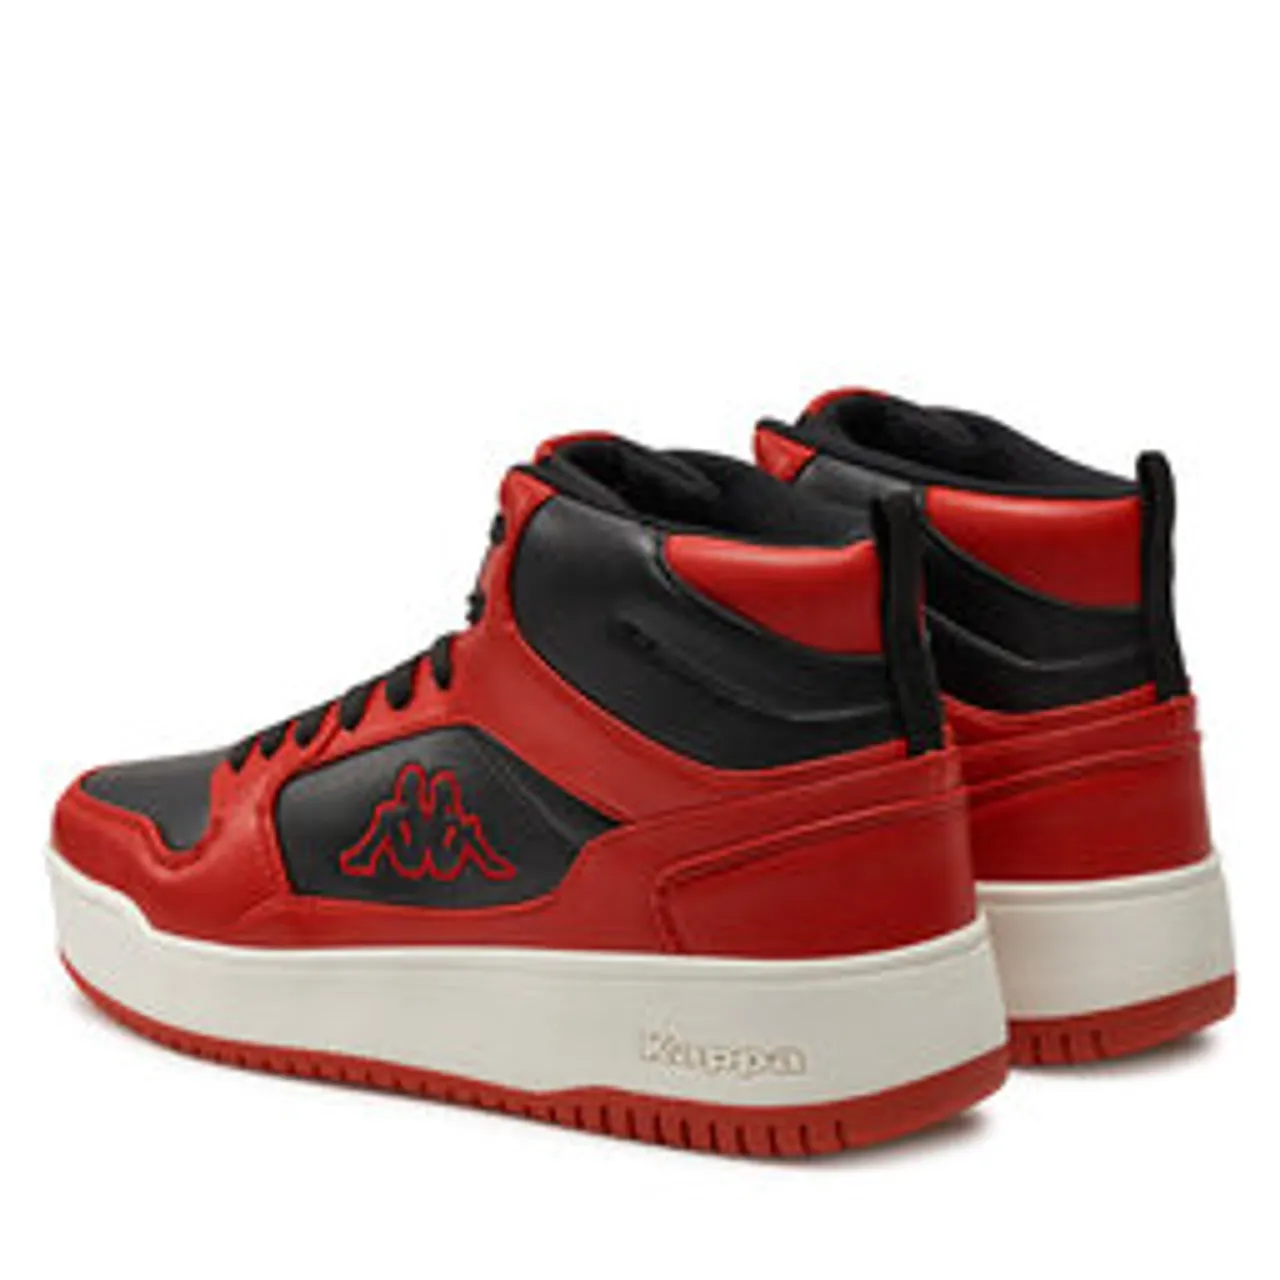 Sneakers Kappa Lineup Pe 243325 Red/Black 2011